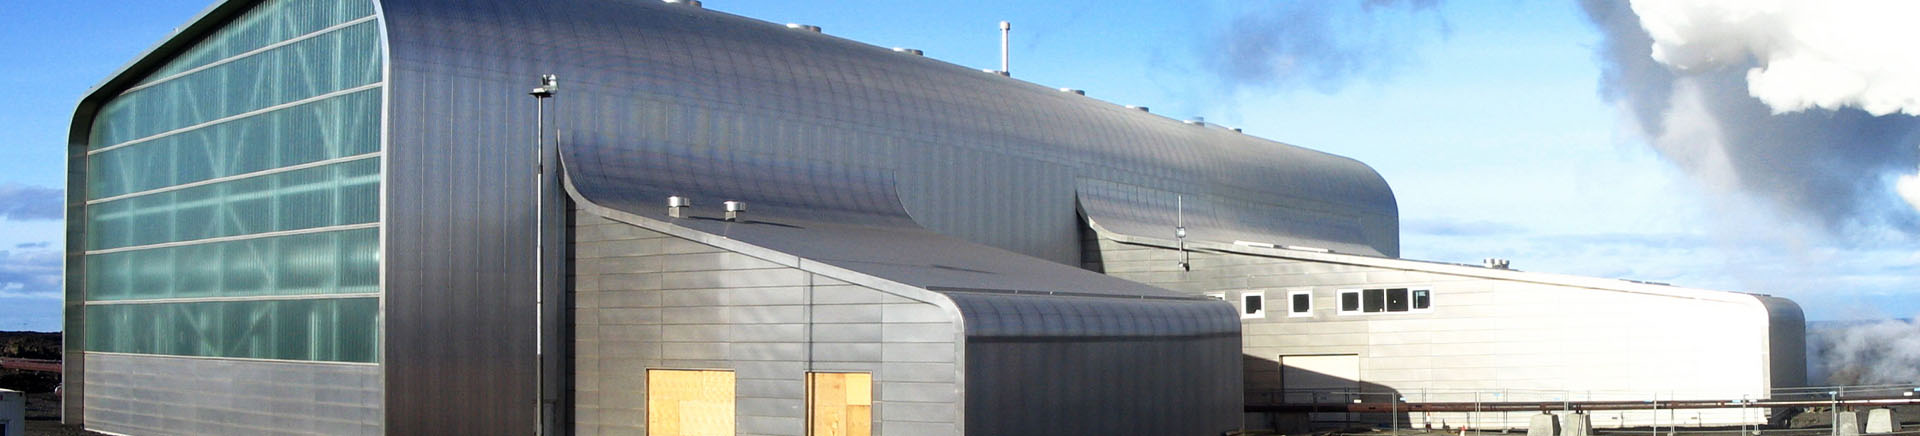 Sonderlösungen Dach & Wand – Wellbleche – Schütte Aluminium